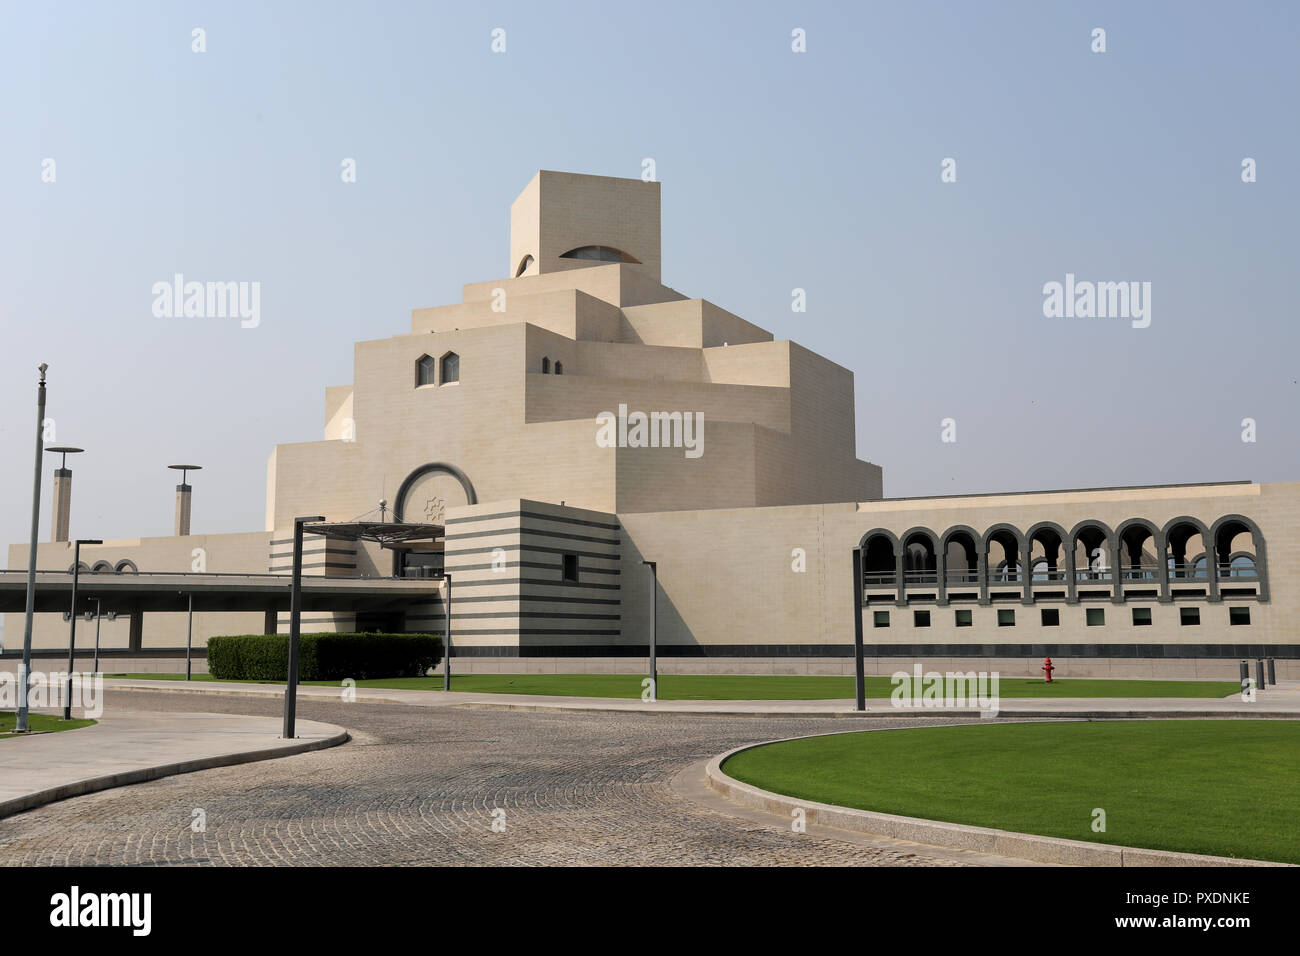 / Doha Qatar - Octubre 10, 2018: La forma distintiva del Museo de Arte Islámico en Doha, Qatar, diseñado por el arquitecto I M Pei. Foto de stock